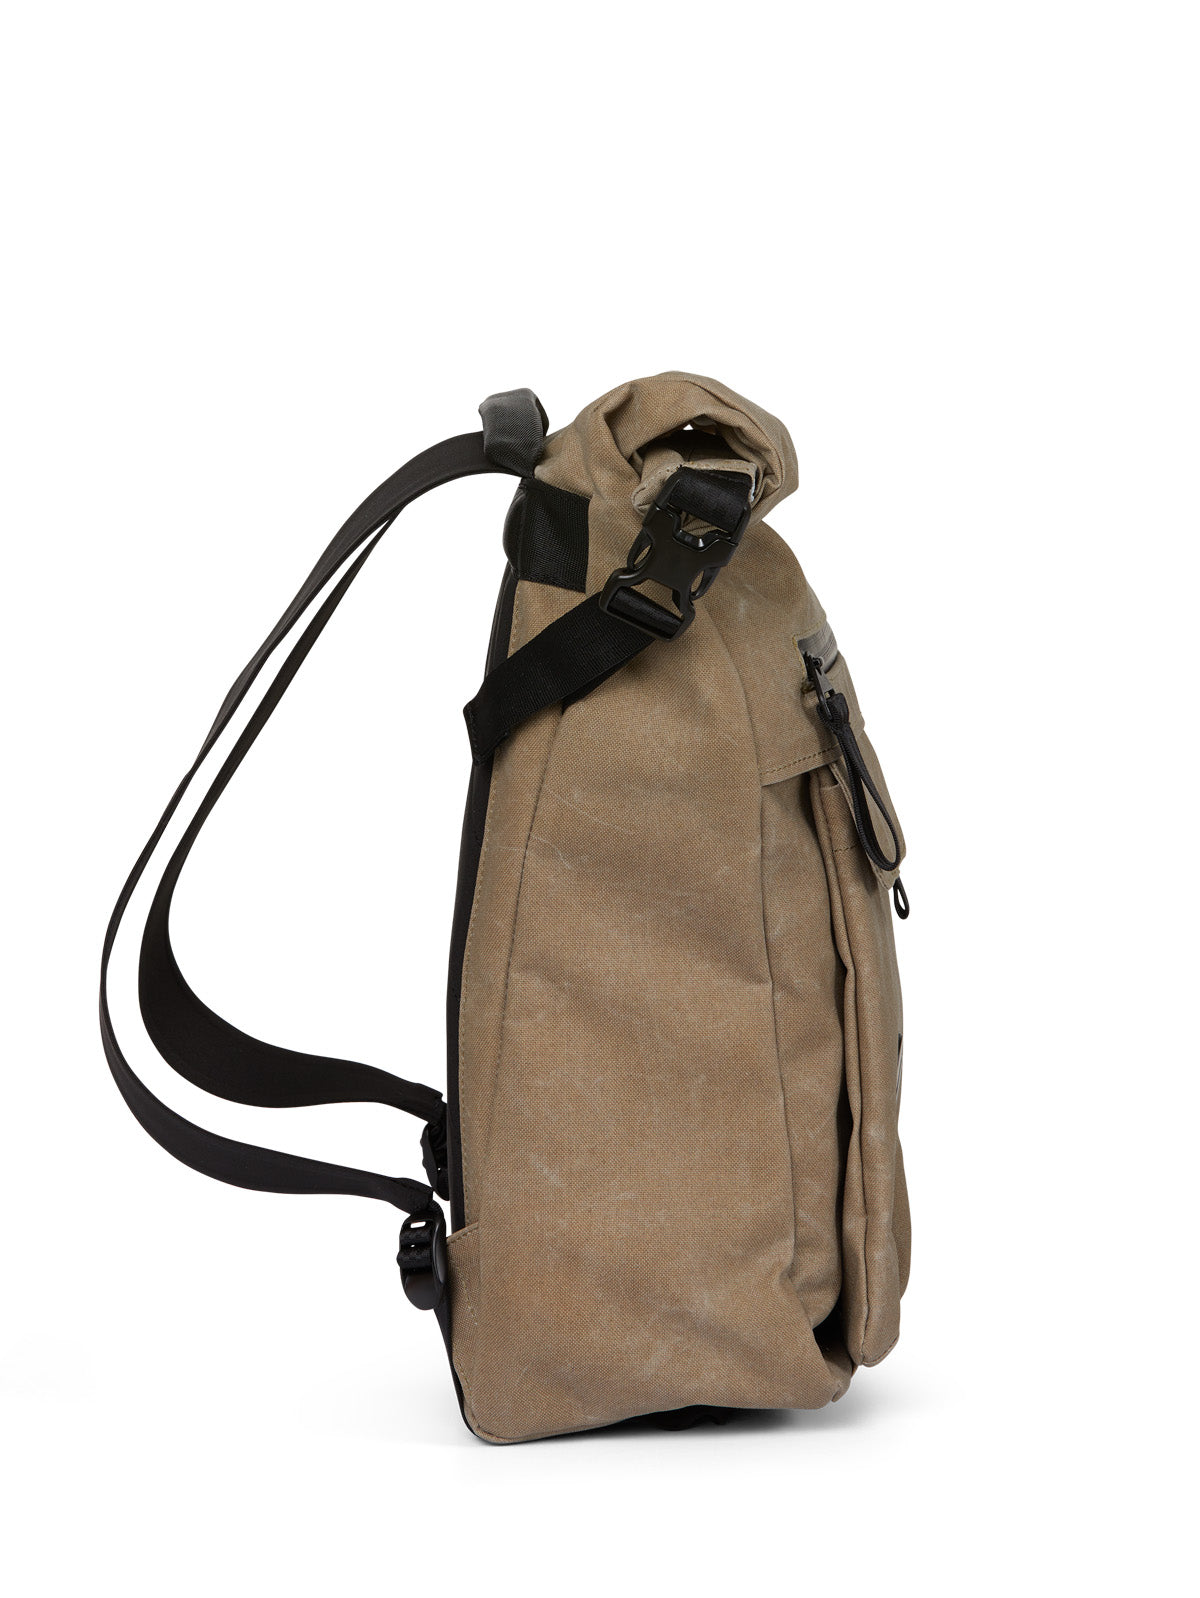 pinqponq-backpack-Carrik-Coated-Khaki-side